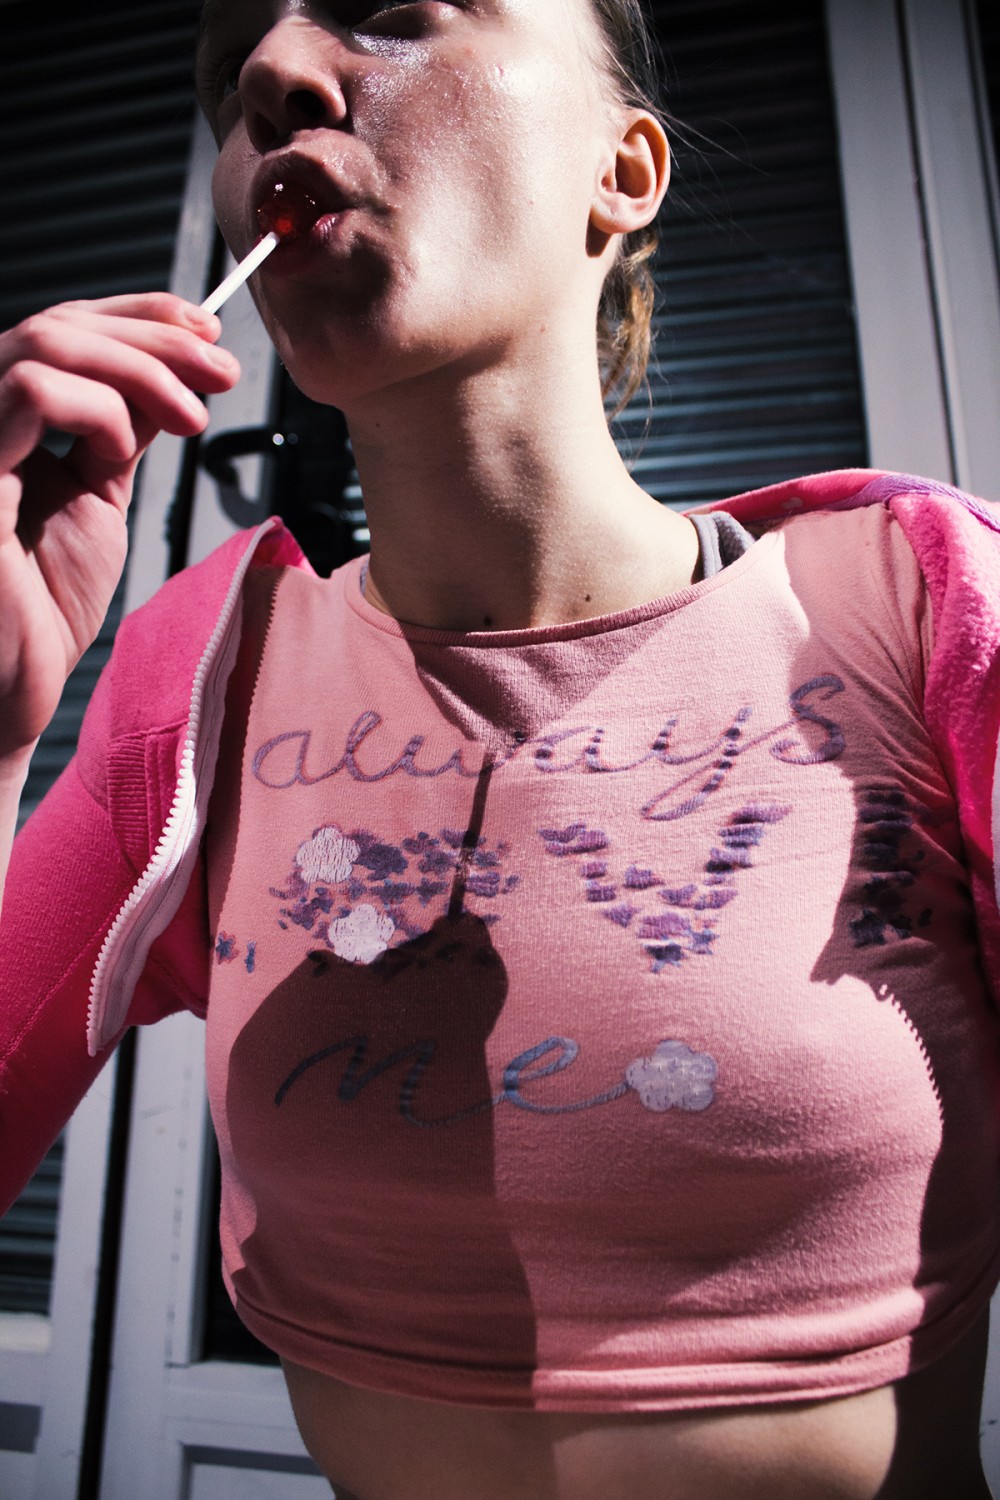 A woman wearing a tank top is sucking a lollipop.